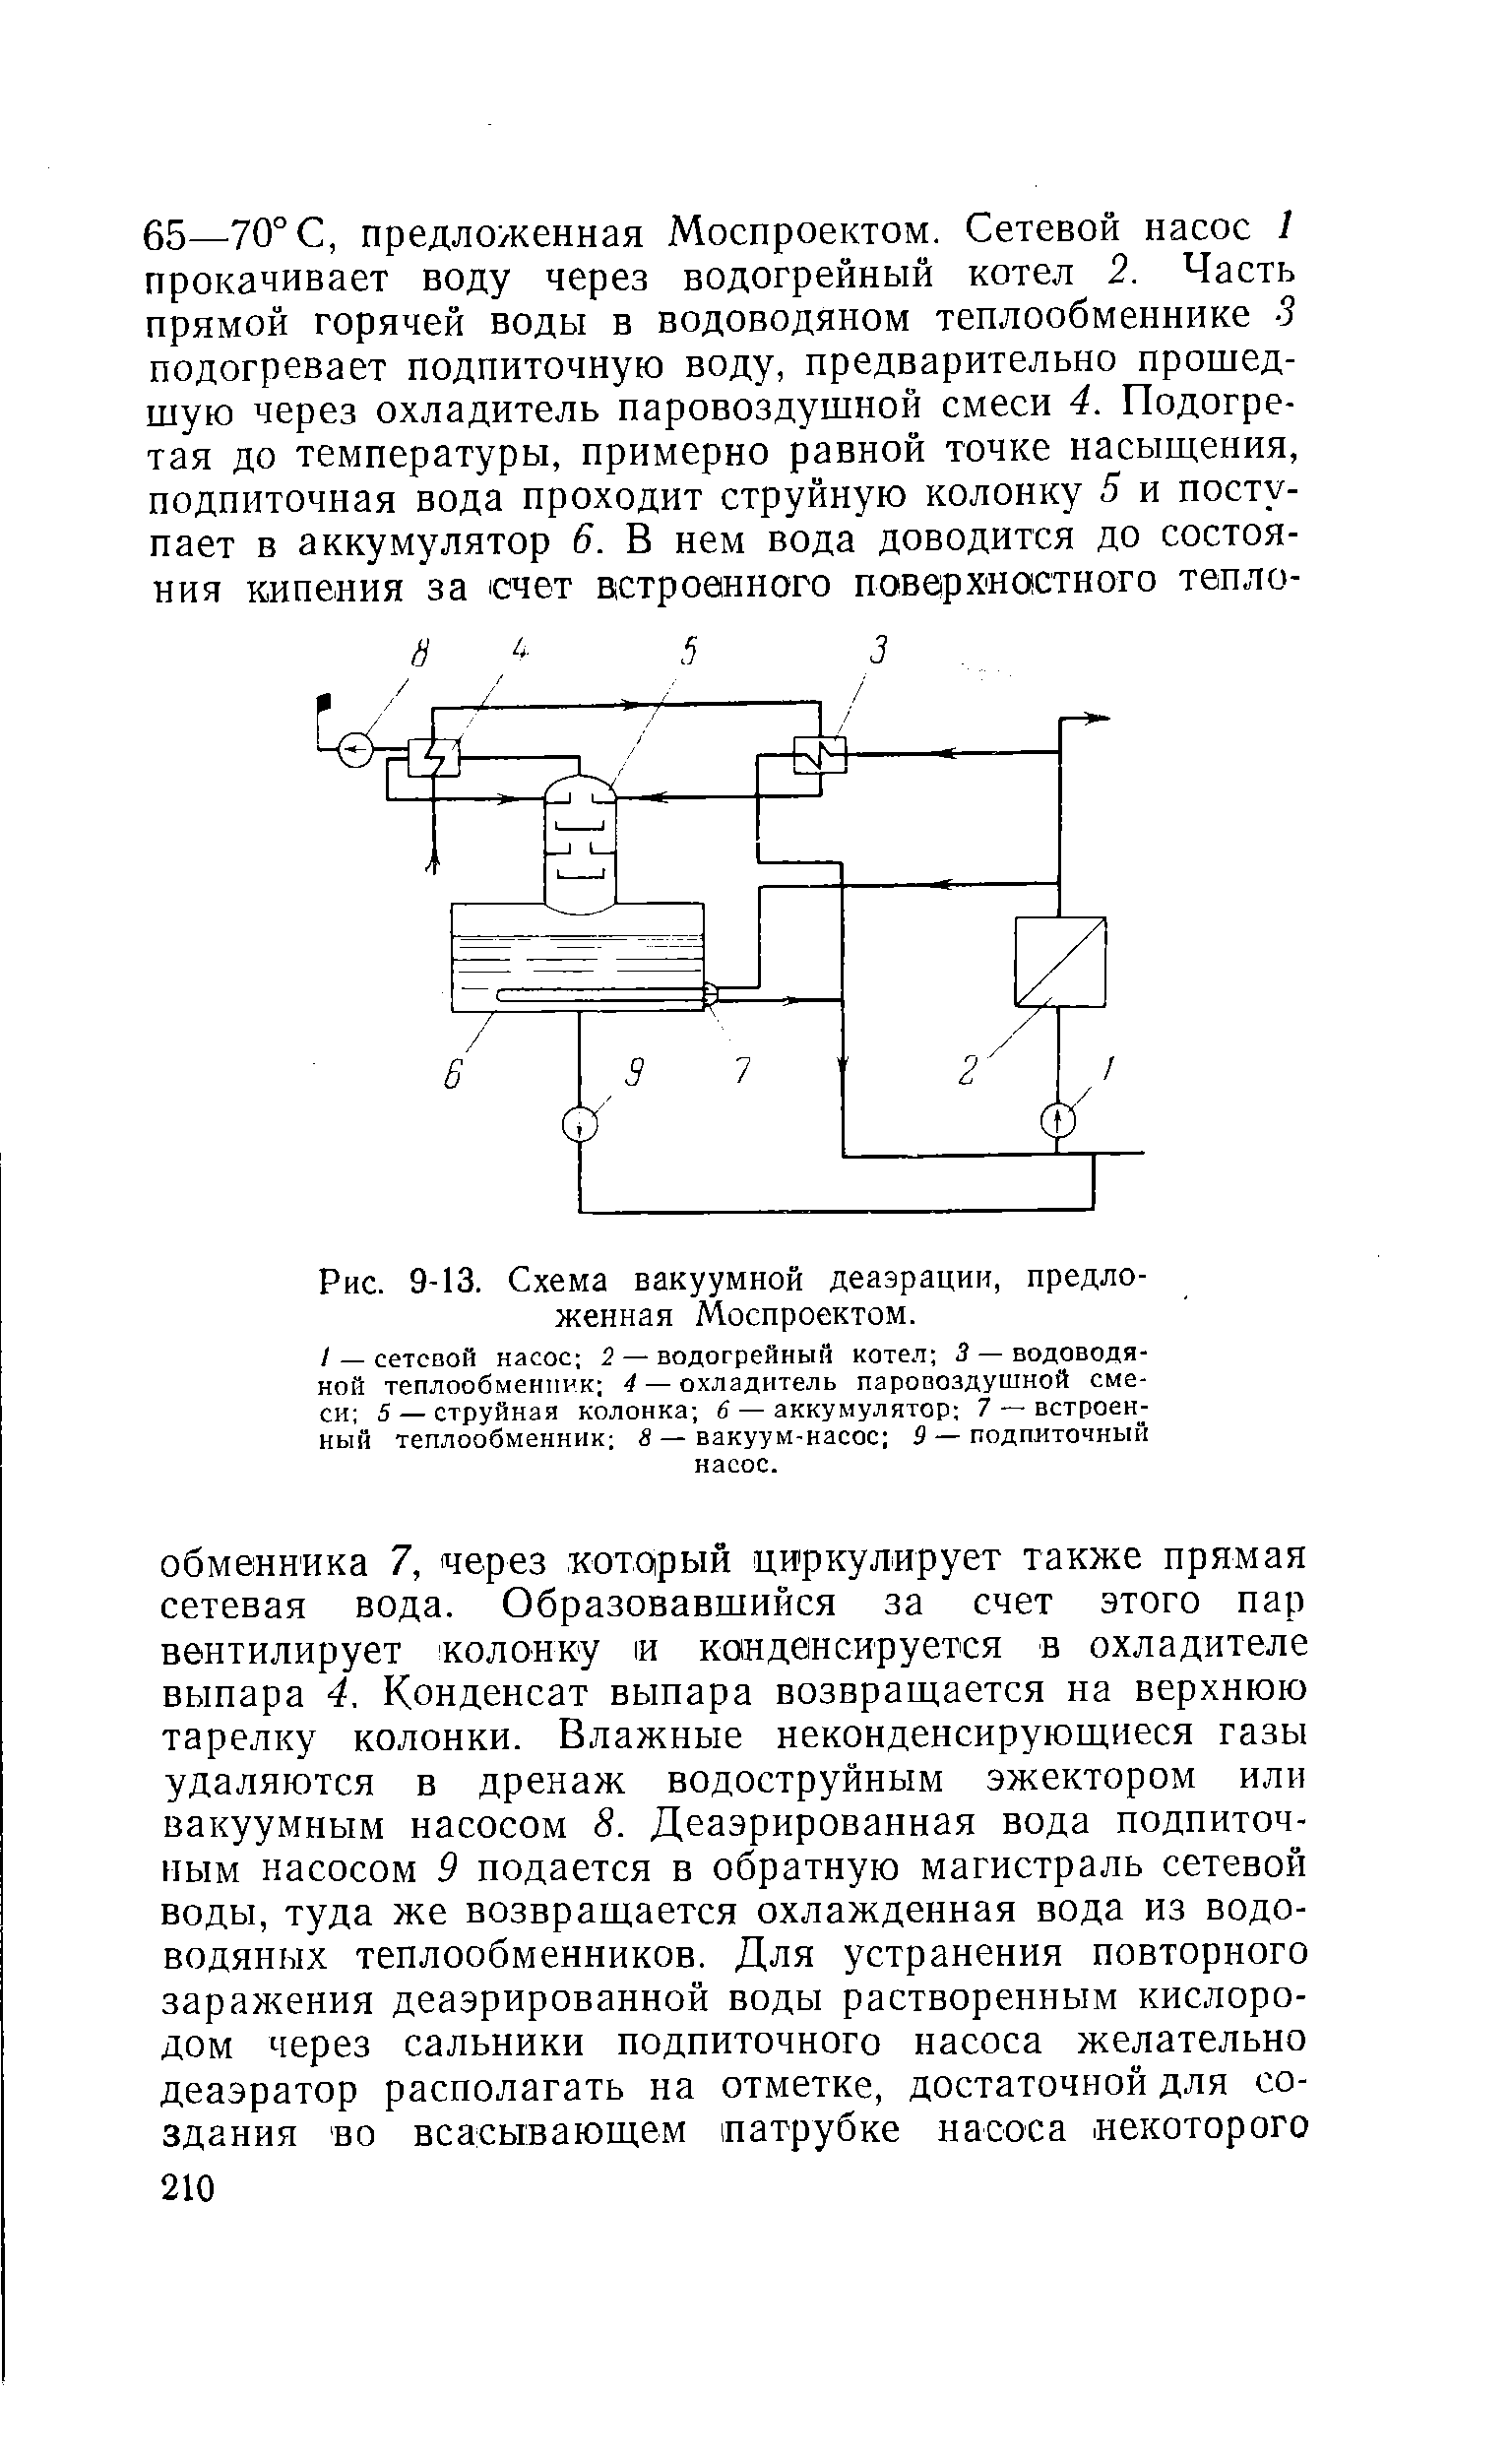 Рис. 9-13. Схема вакуумной деаэрации, предложенная Моспроектом.
